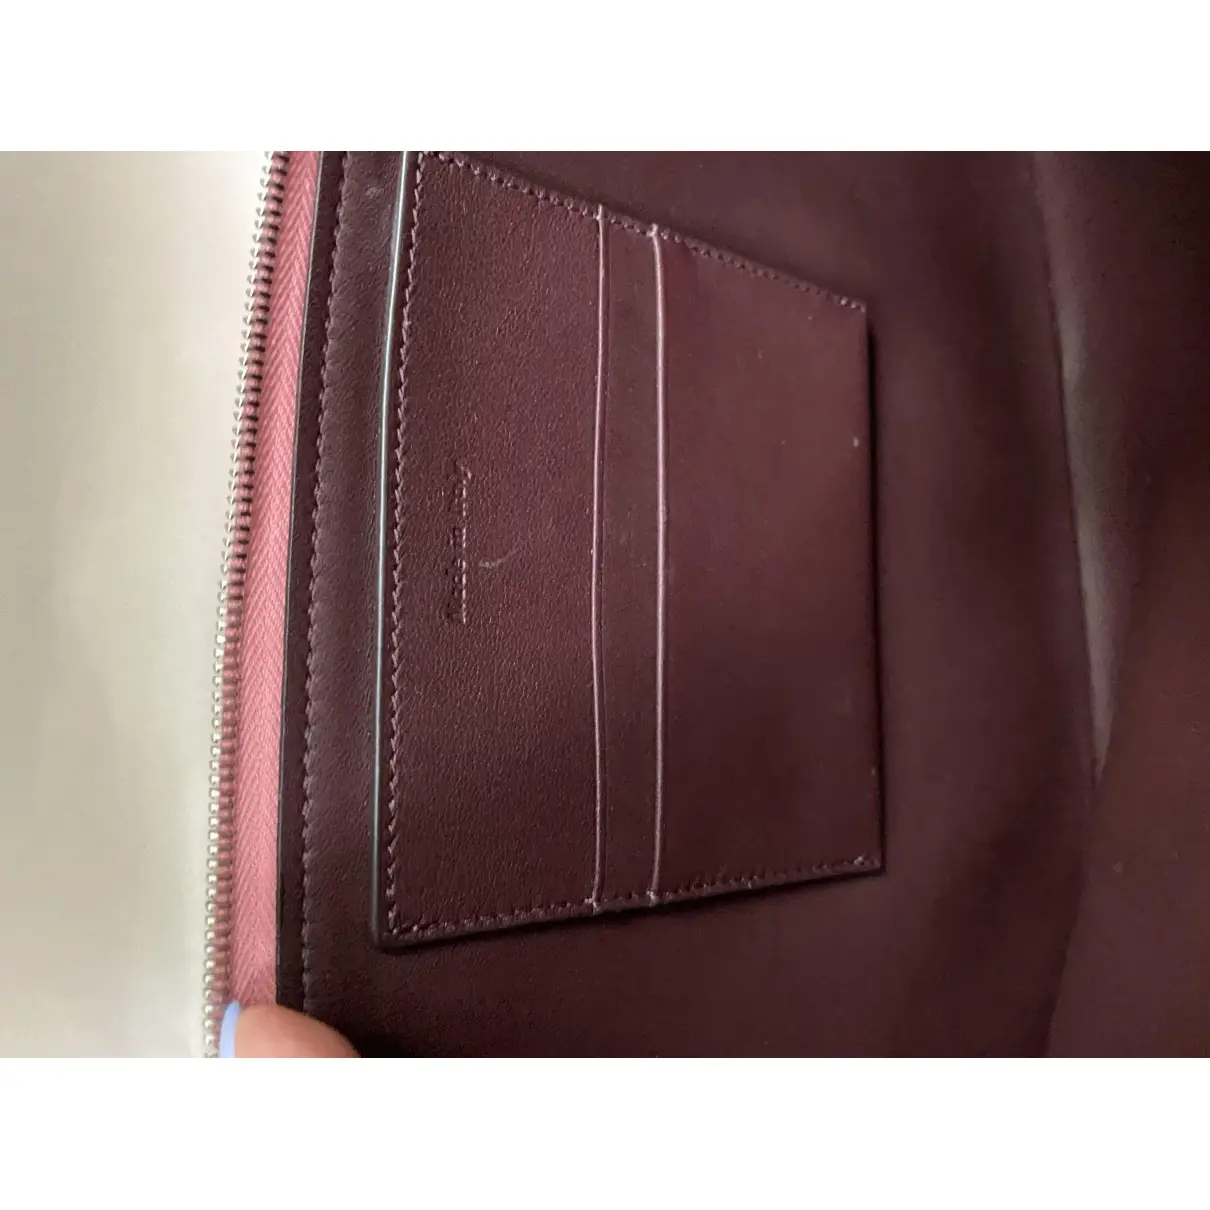 Buy Celine Leather clutch bag online